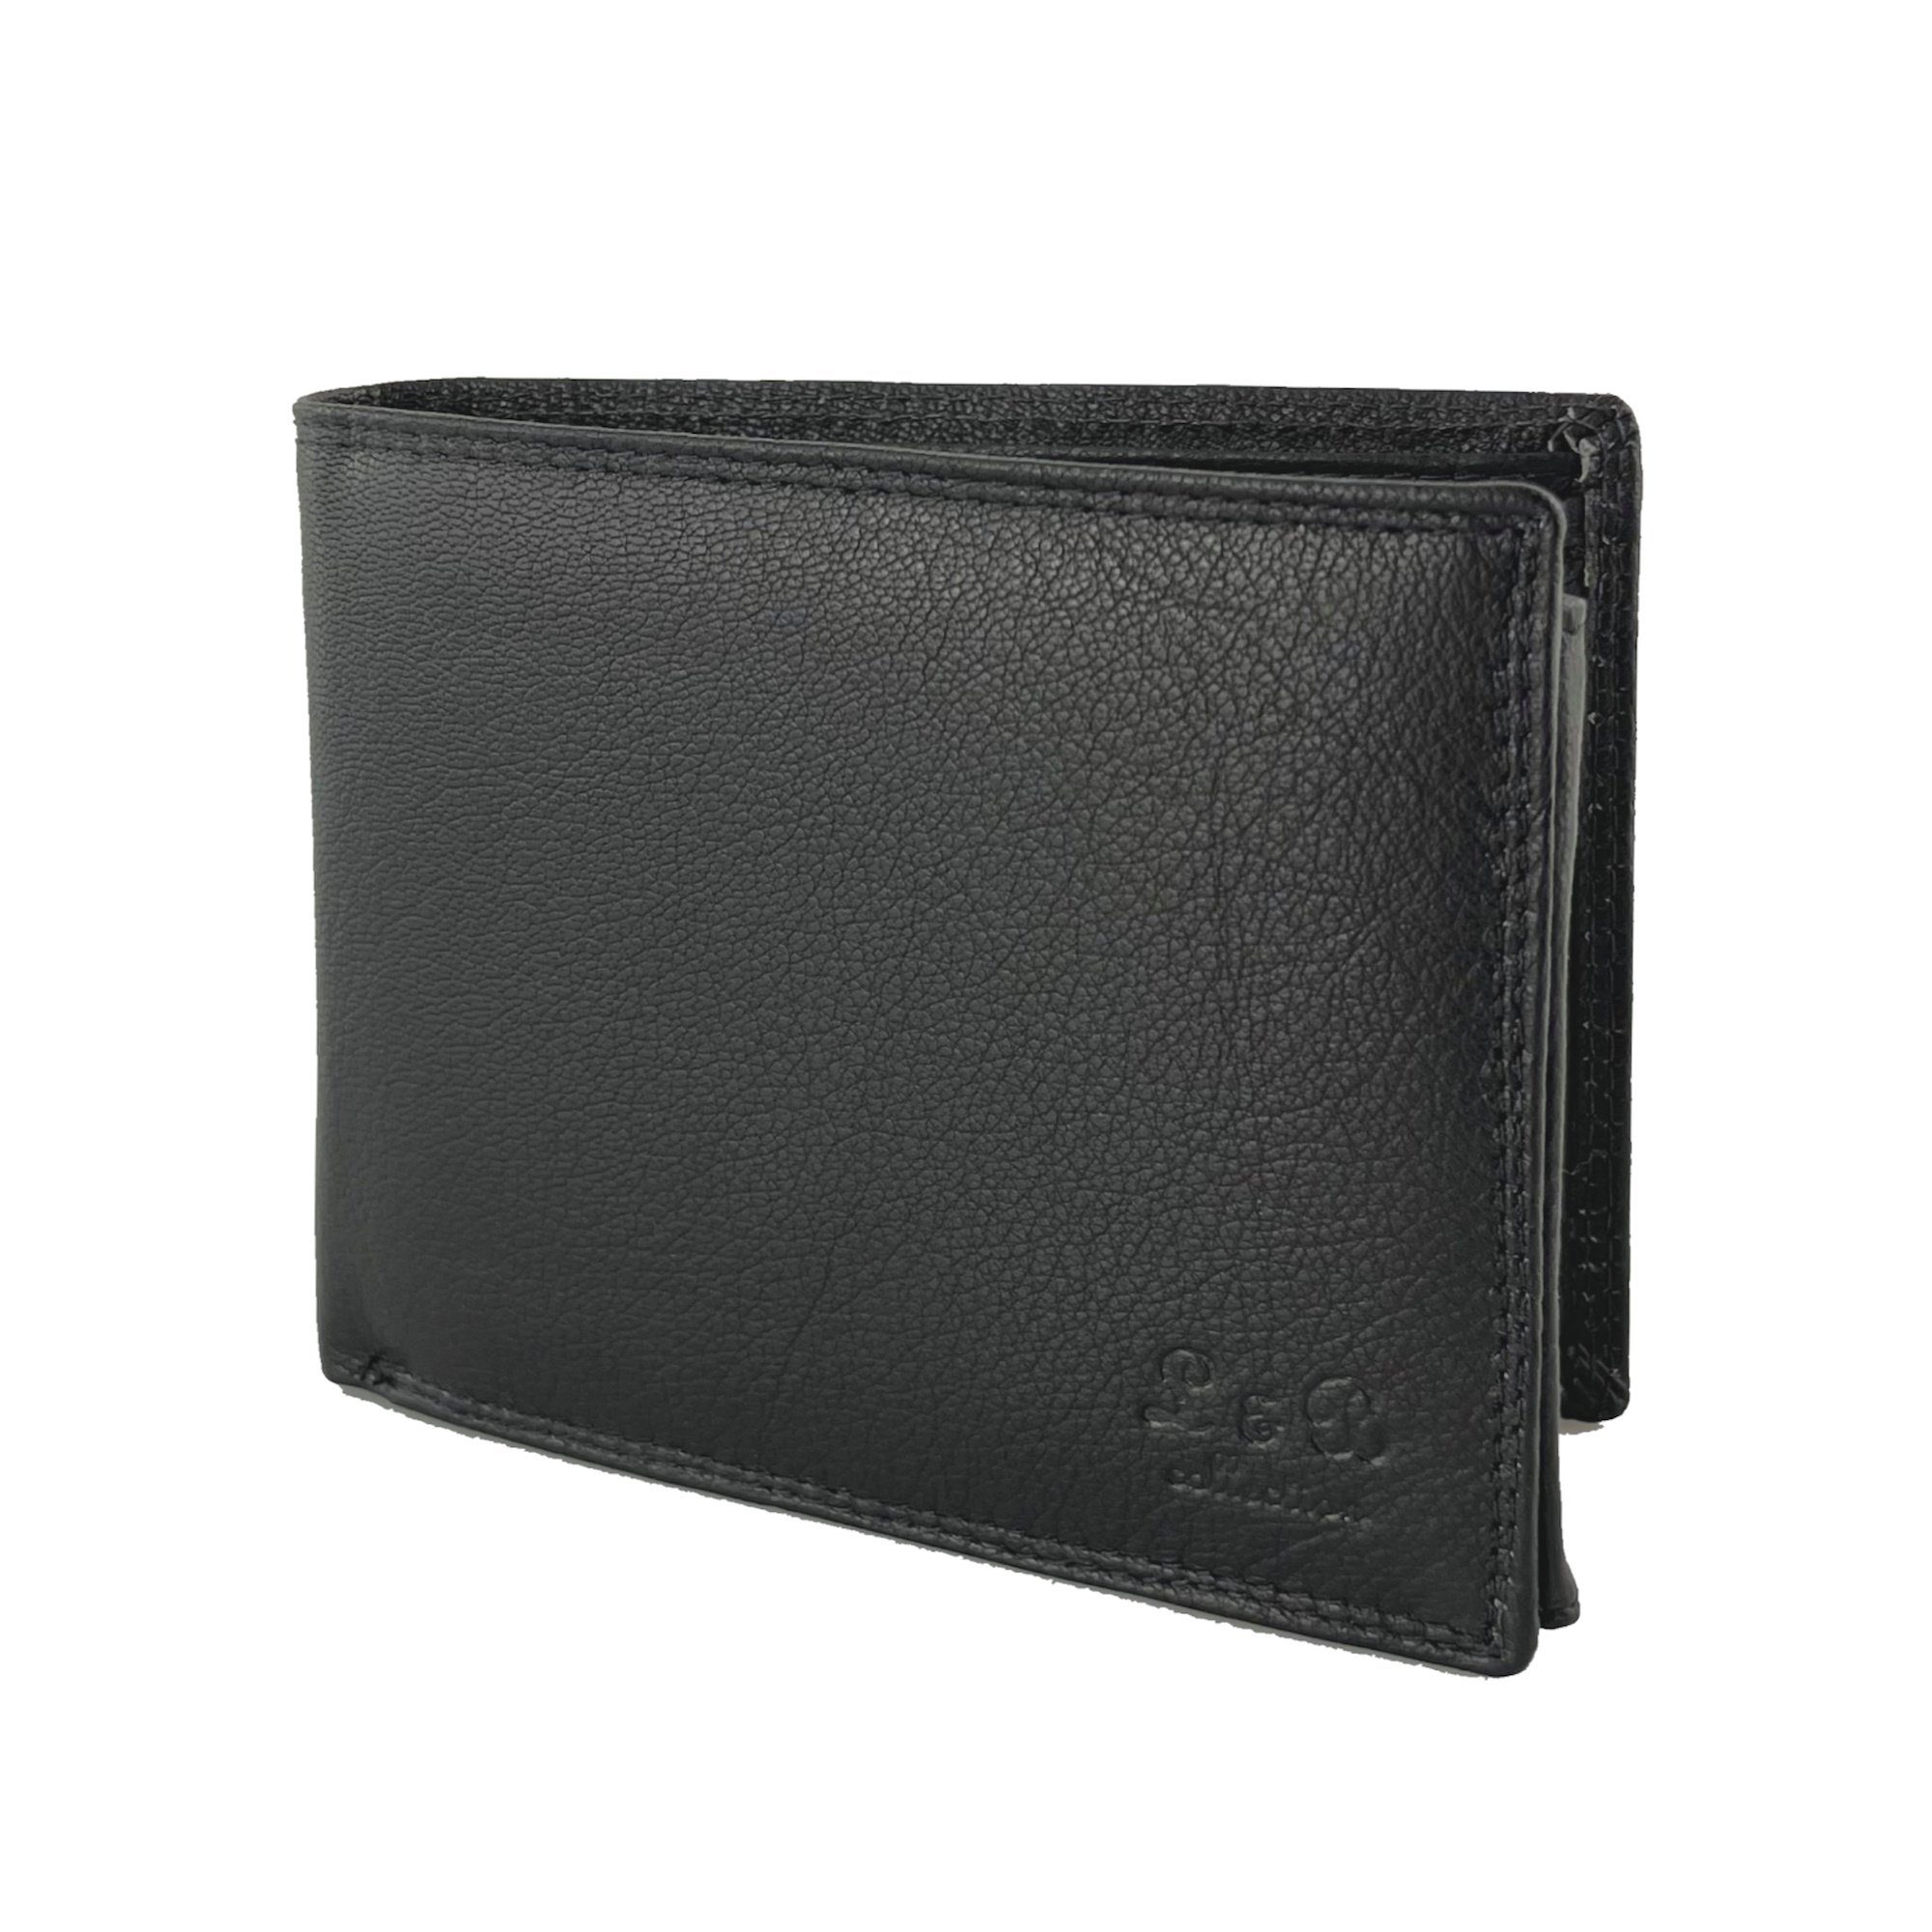 L&B Geldbörse Rindsleder Portemonnaie, integrierter RFID-Schutz >2339< Geldbeutel, Druckknopffach & Reißverschlussfach